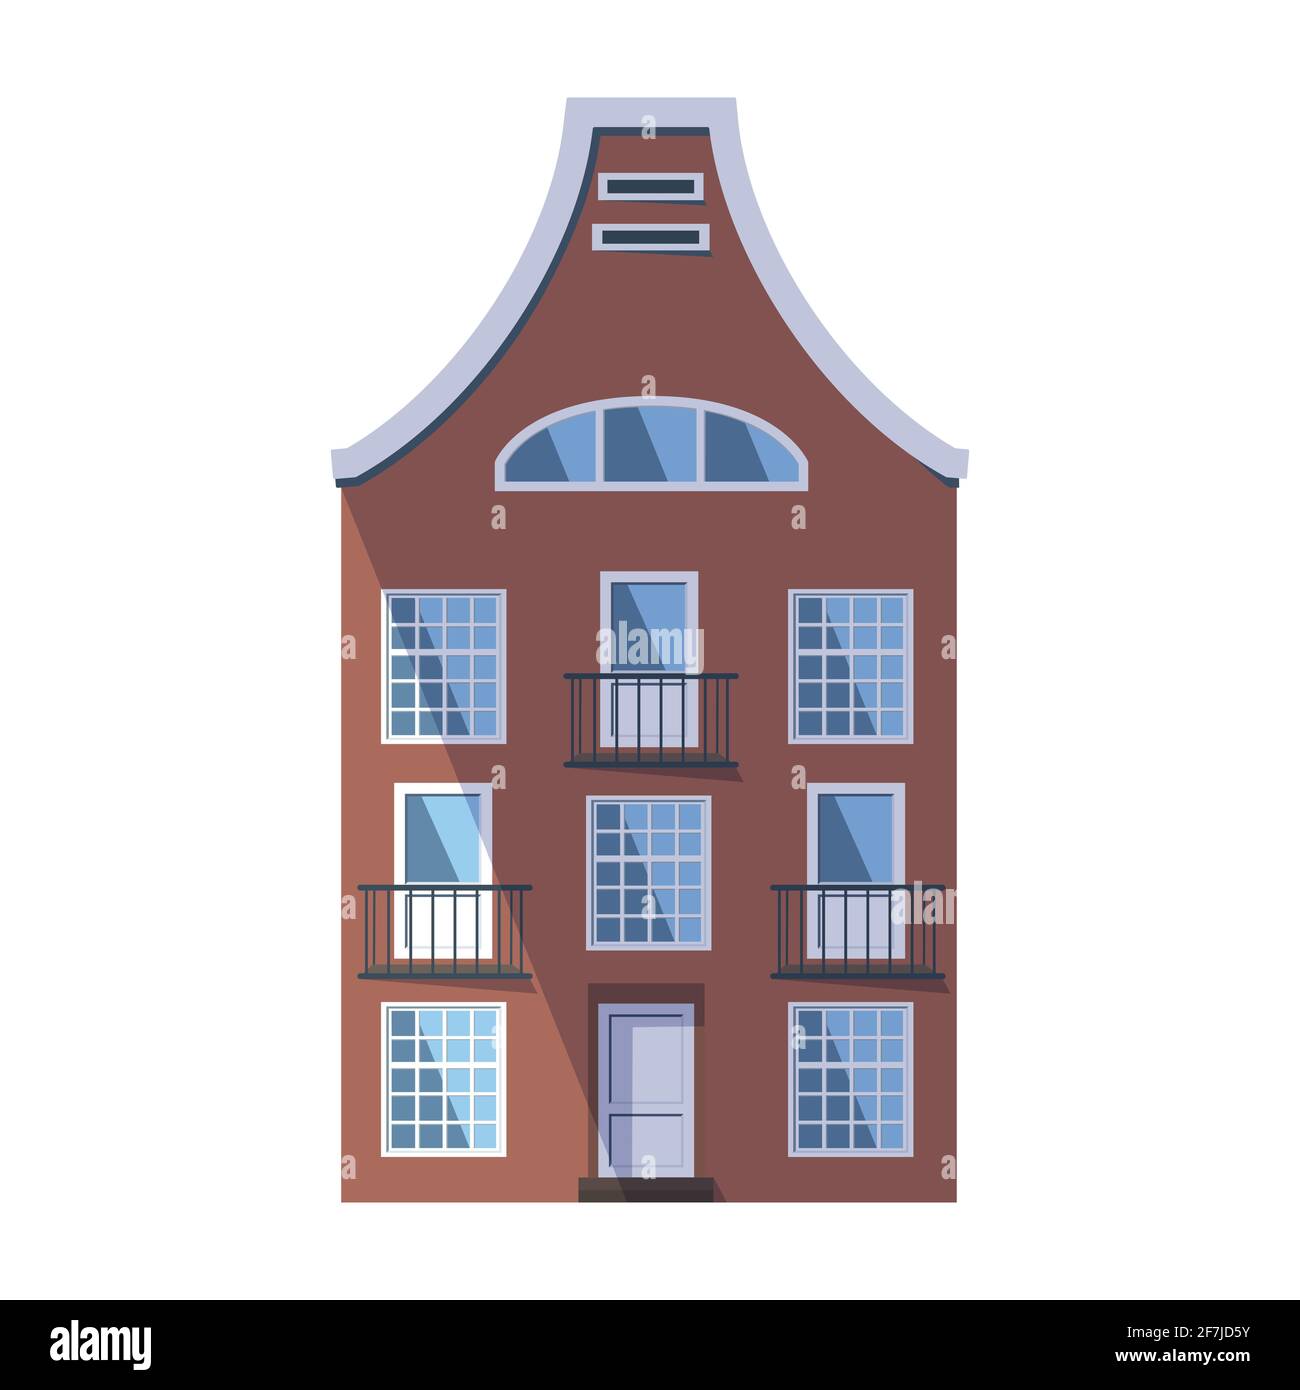 Ancienne maison marron européenne dans le style traditionnel de la ville hollandaise avec un toit double, des fenêtres rondes mansardées et des balcons. Illustration vectorielle dans le Illustration de Vecteur